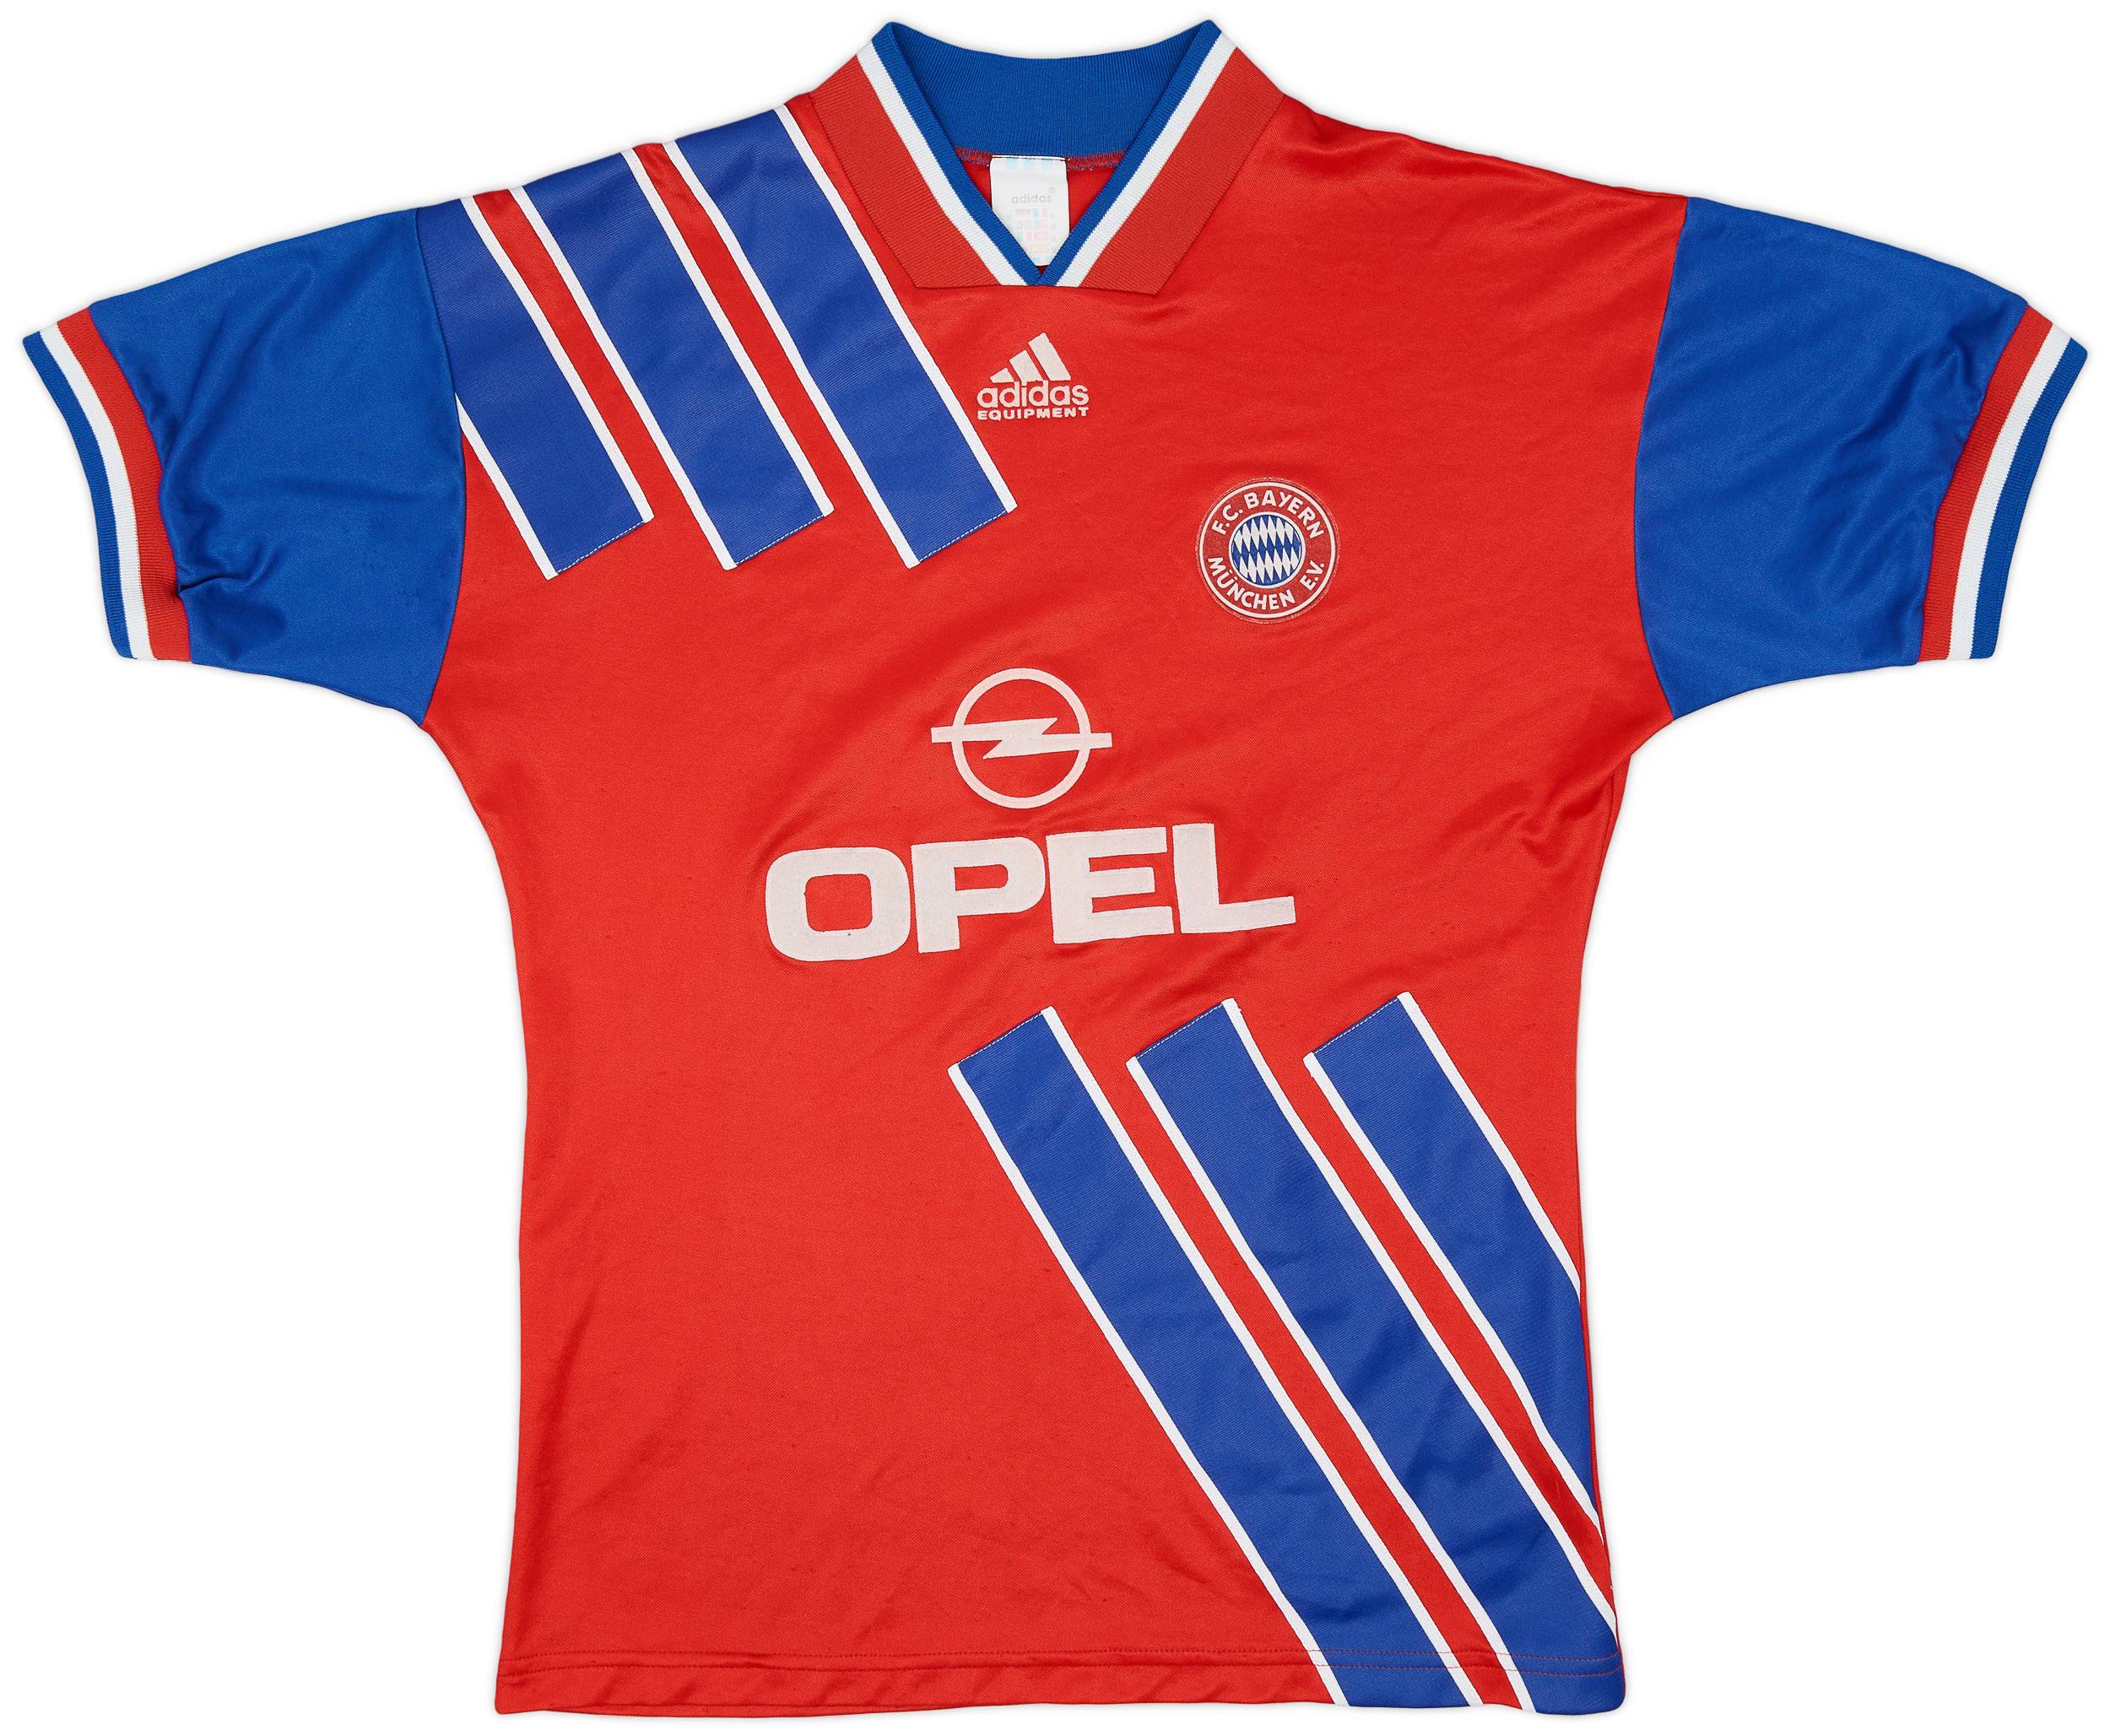 1993-95 Bayern Munich Home Shirt - 8/10 - (M)